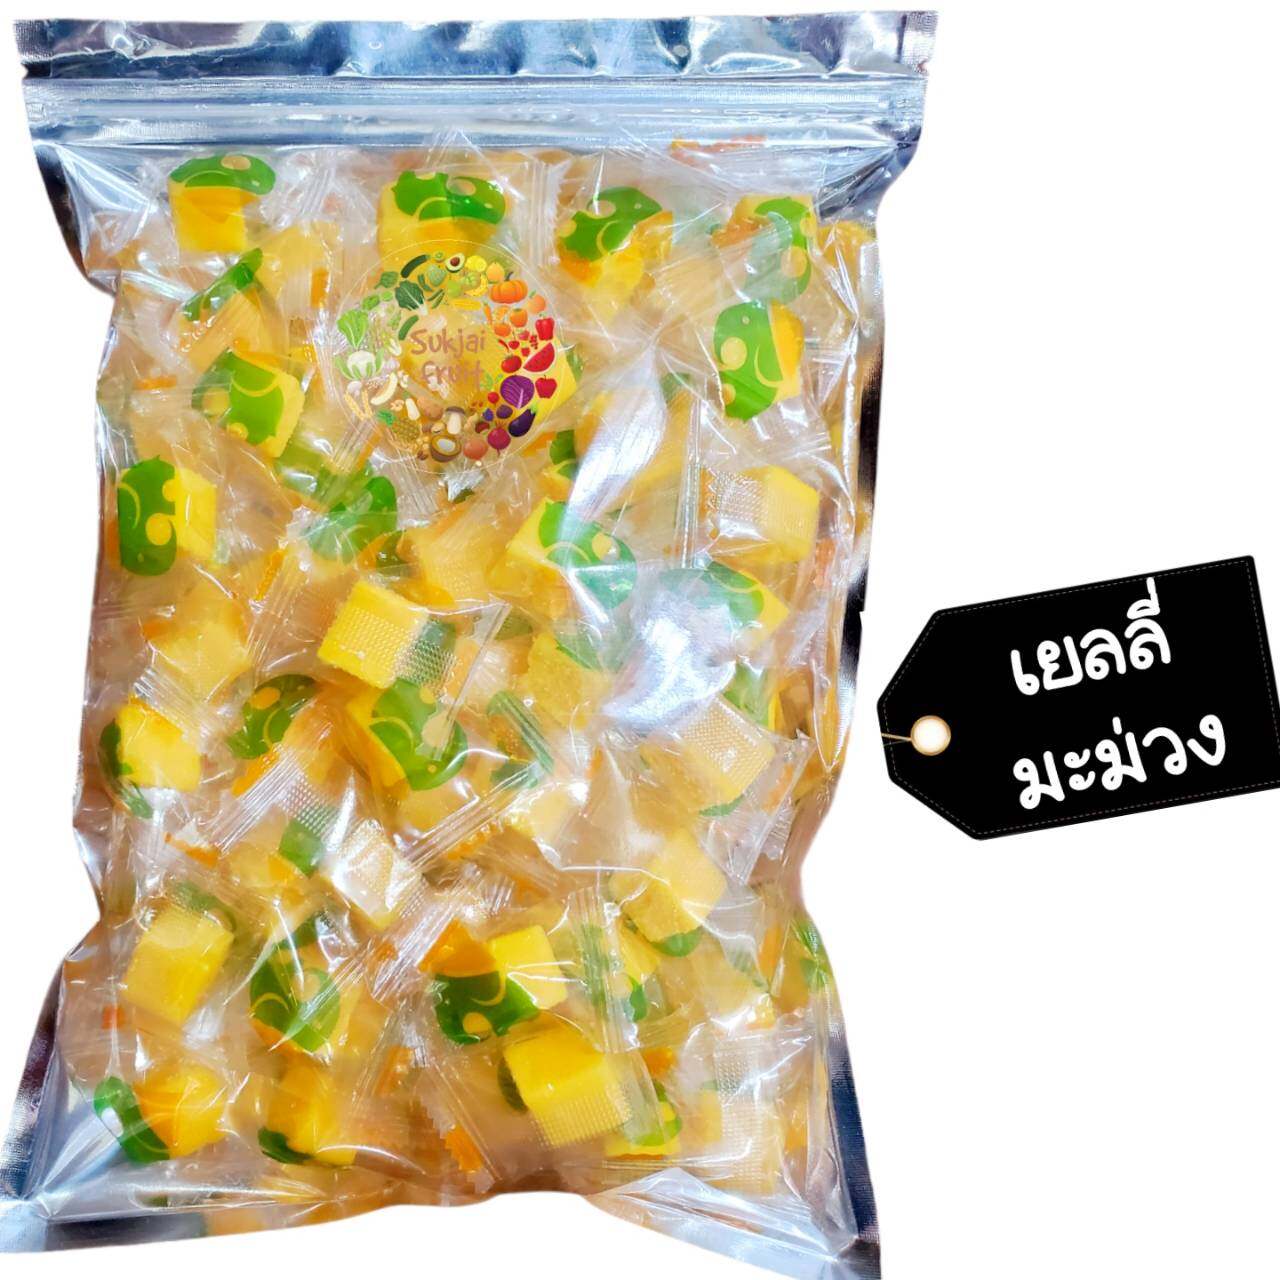 เยลลี่ มะม่วง น้ำดอกไม้ 300 กรัม (70 เม็ด) Mango jelly 300 g  - Dried fruit ผลไม้ อบแห้ง ขนมไทย ขนม OTOP บ๊วย ผลไม้อบแห้ง บ๊วย ผลไม้อบแห้ง